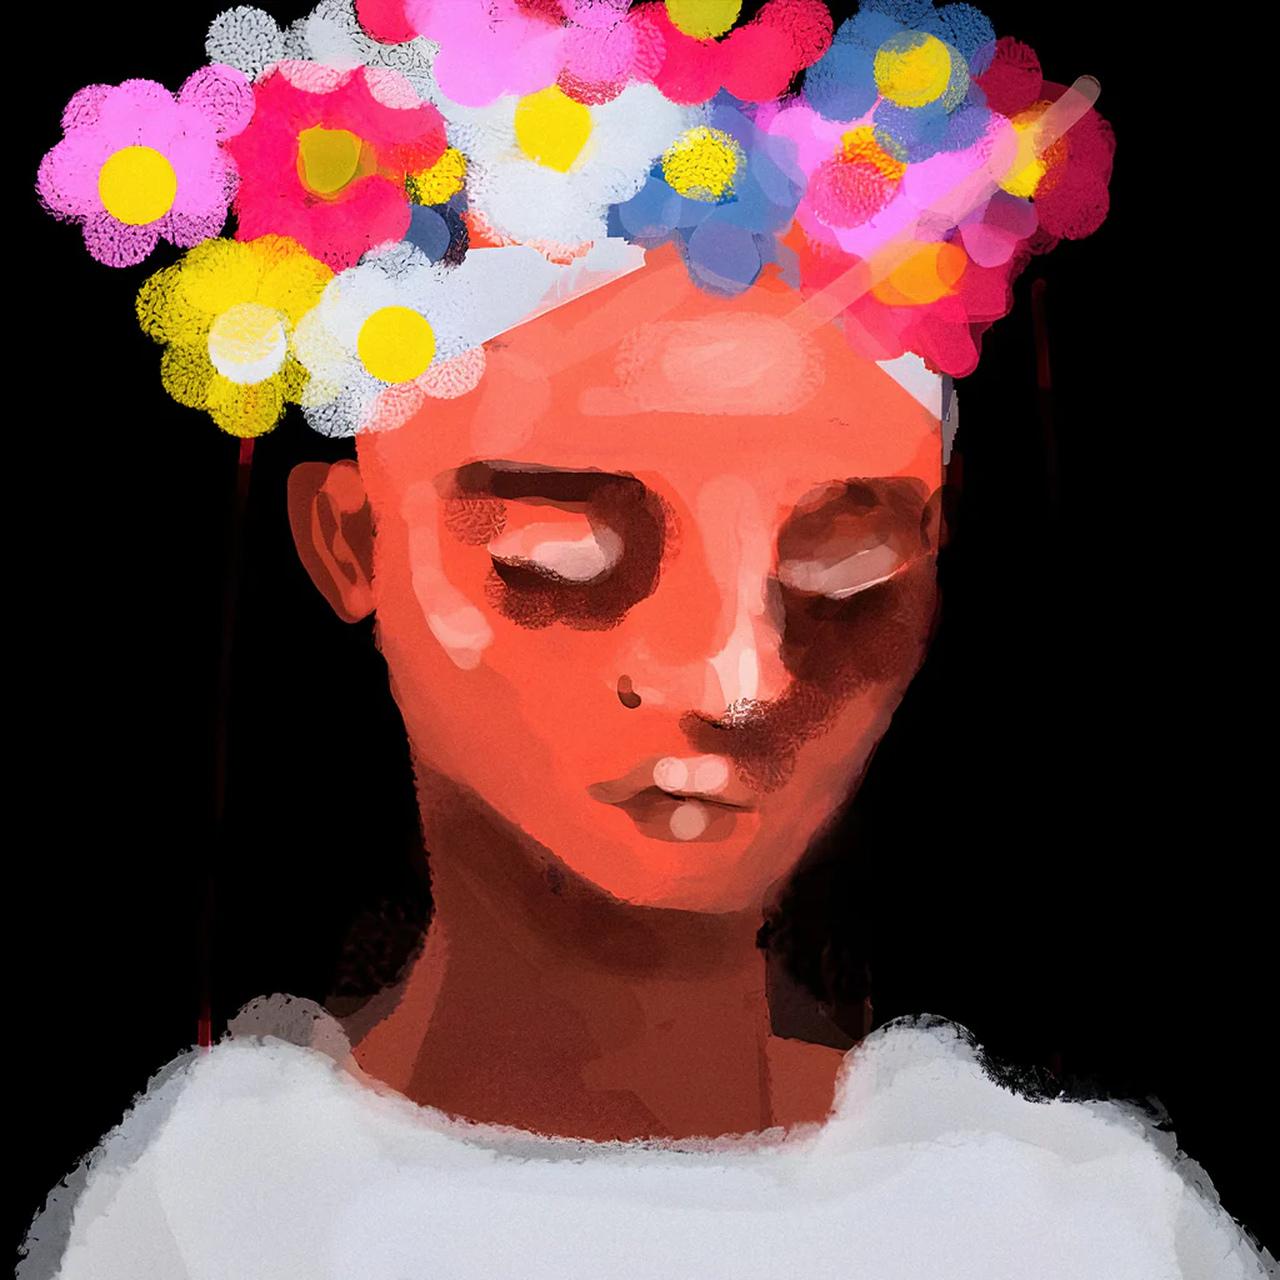 Capa do novo álbum de Bruno Berle é ilustrada pela obra 'Menino com flores [inspirado no ticumbi]' (2019), de Deborah Amoreira